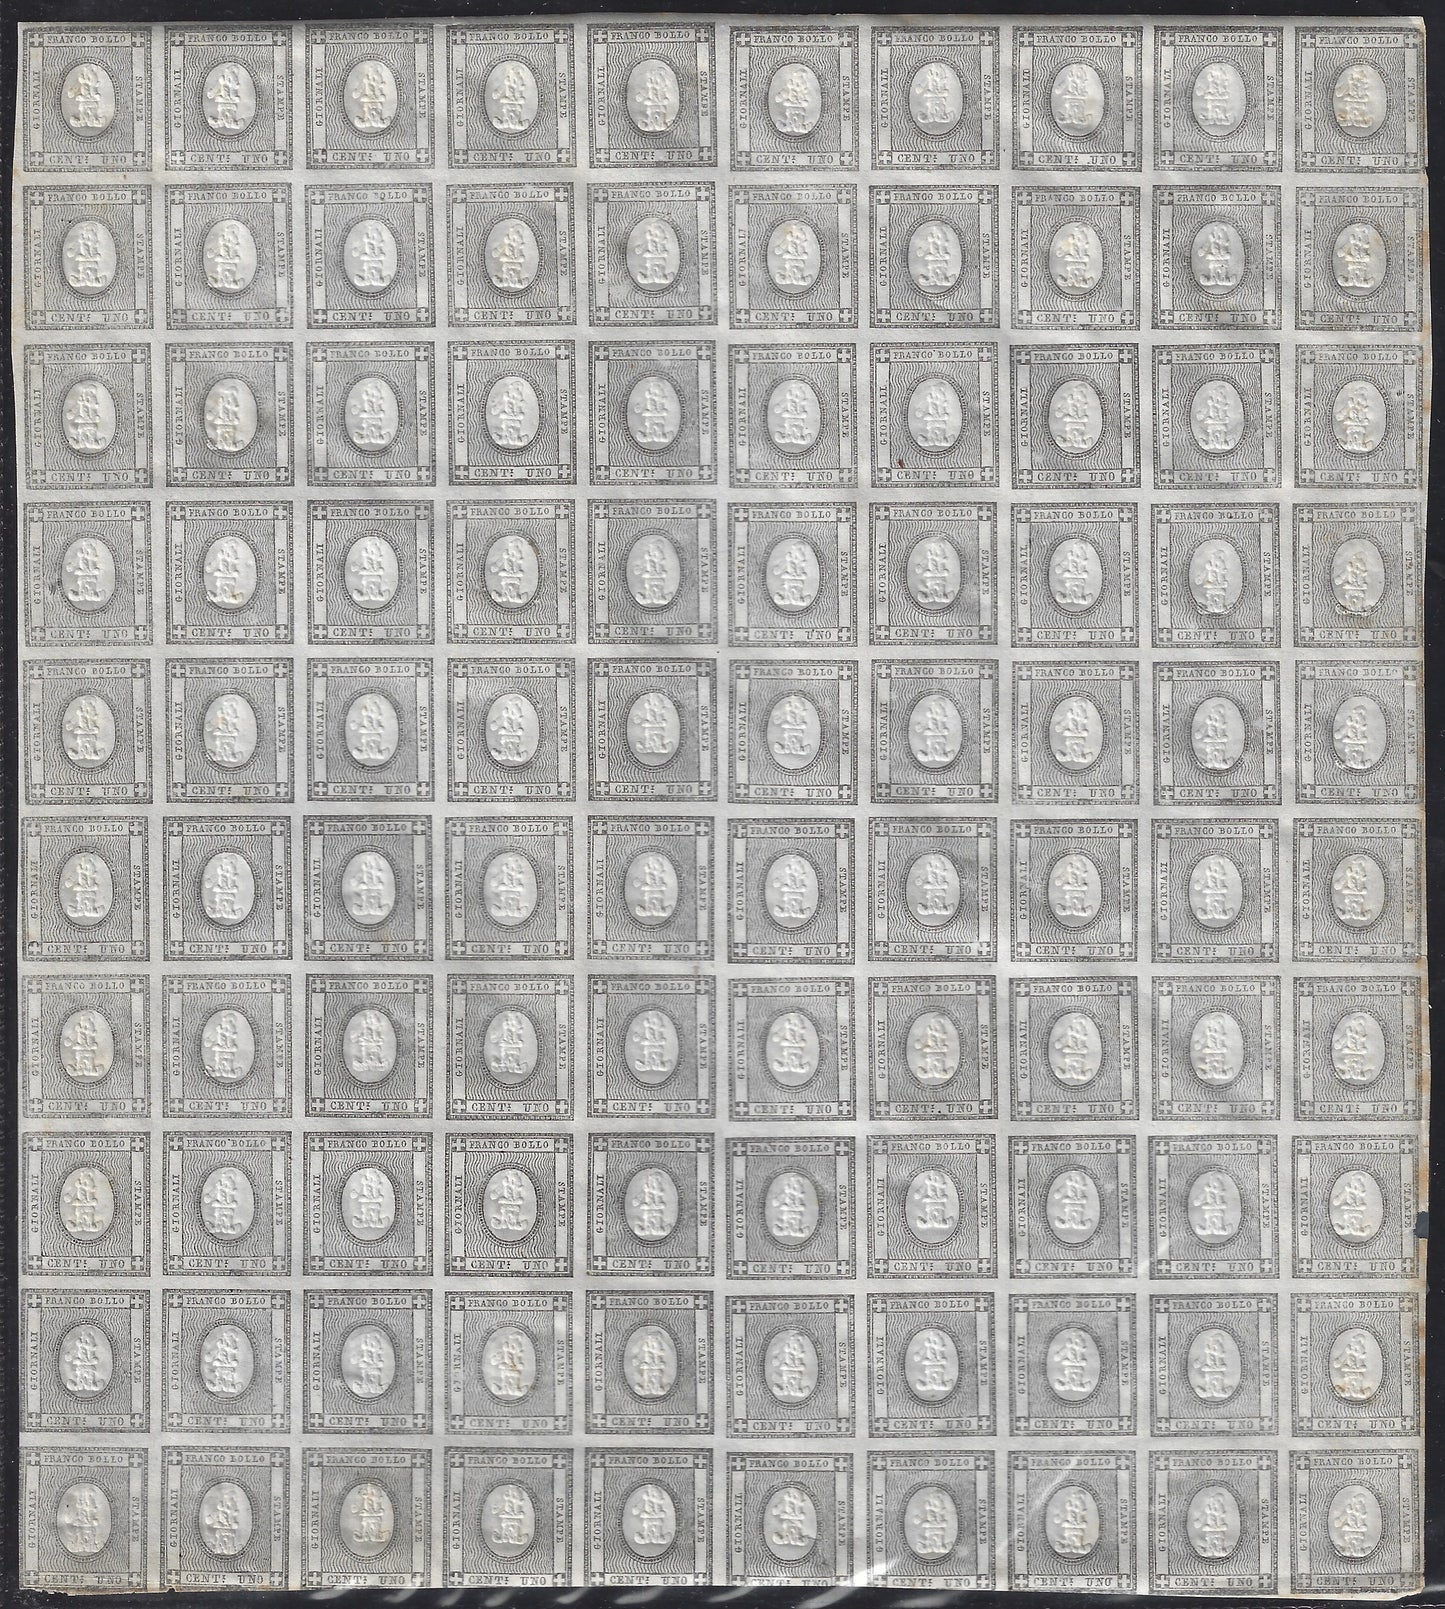 SardF7 - 1861 - Francobolli per le Stampe c. 1 grigio nero foglio completo di 100 esemplari nuovo con gomma integra. (19).